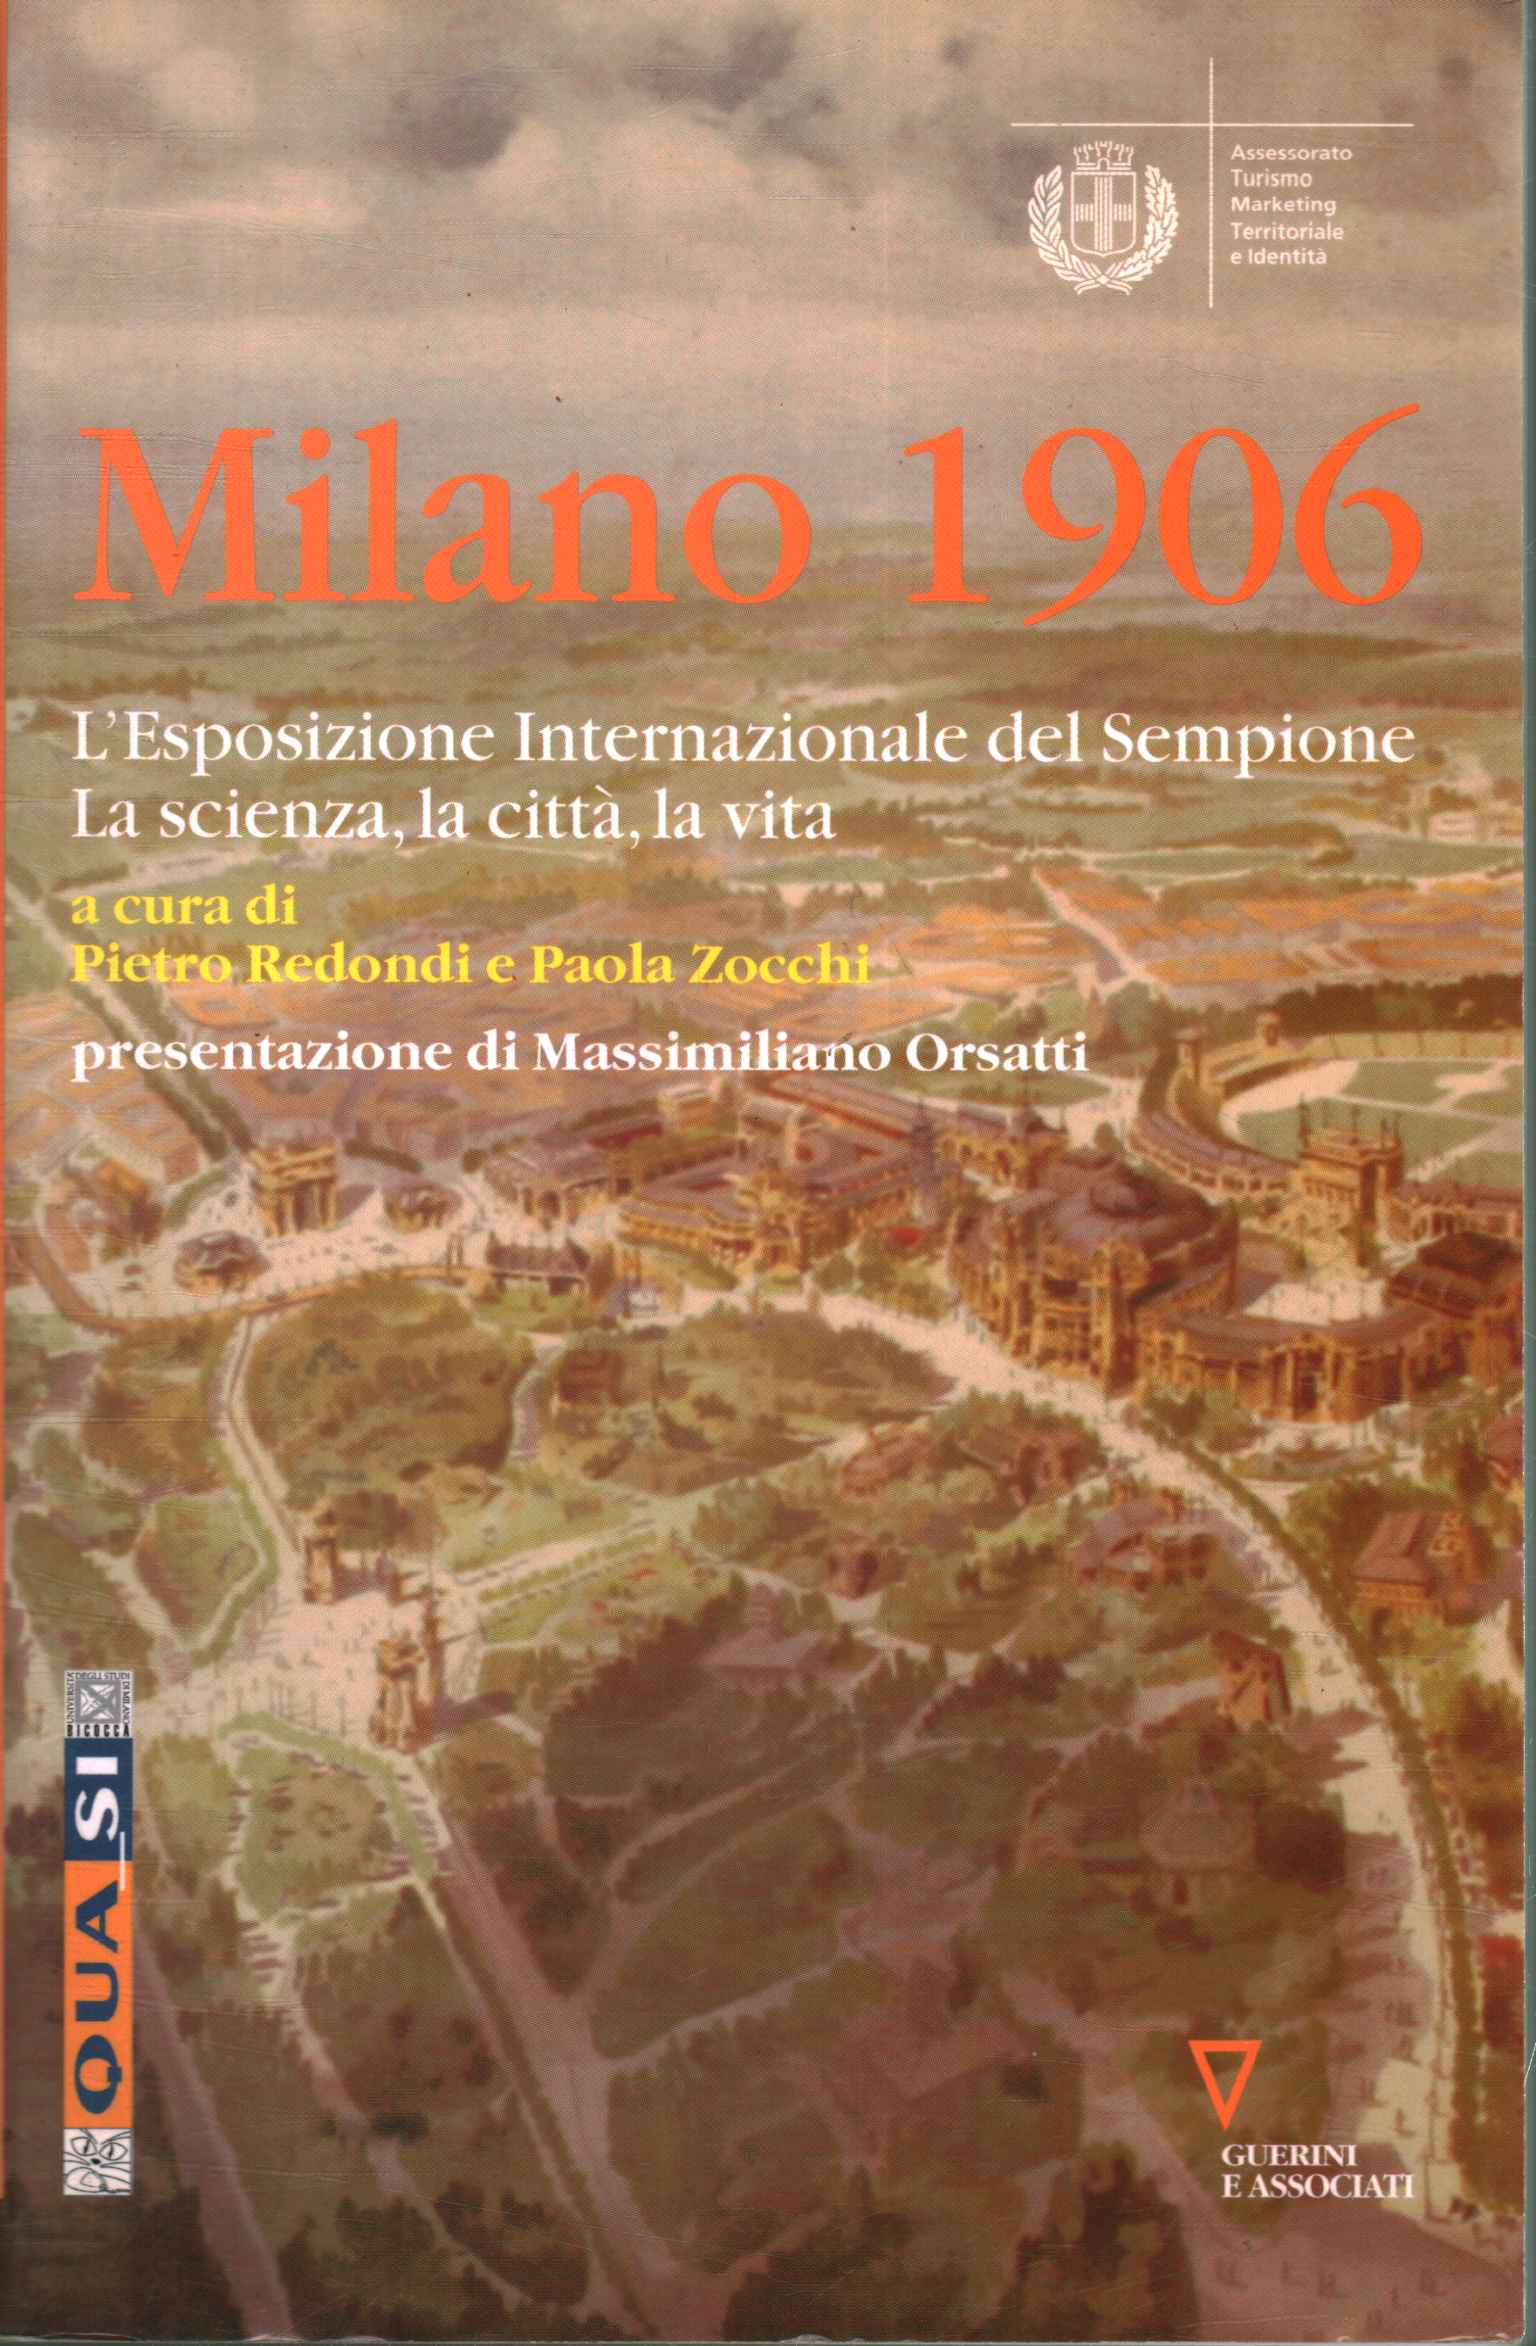 Milan 1906